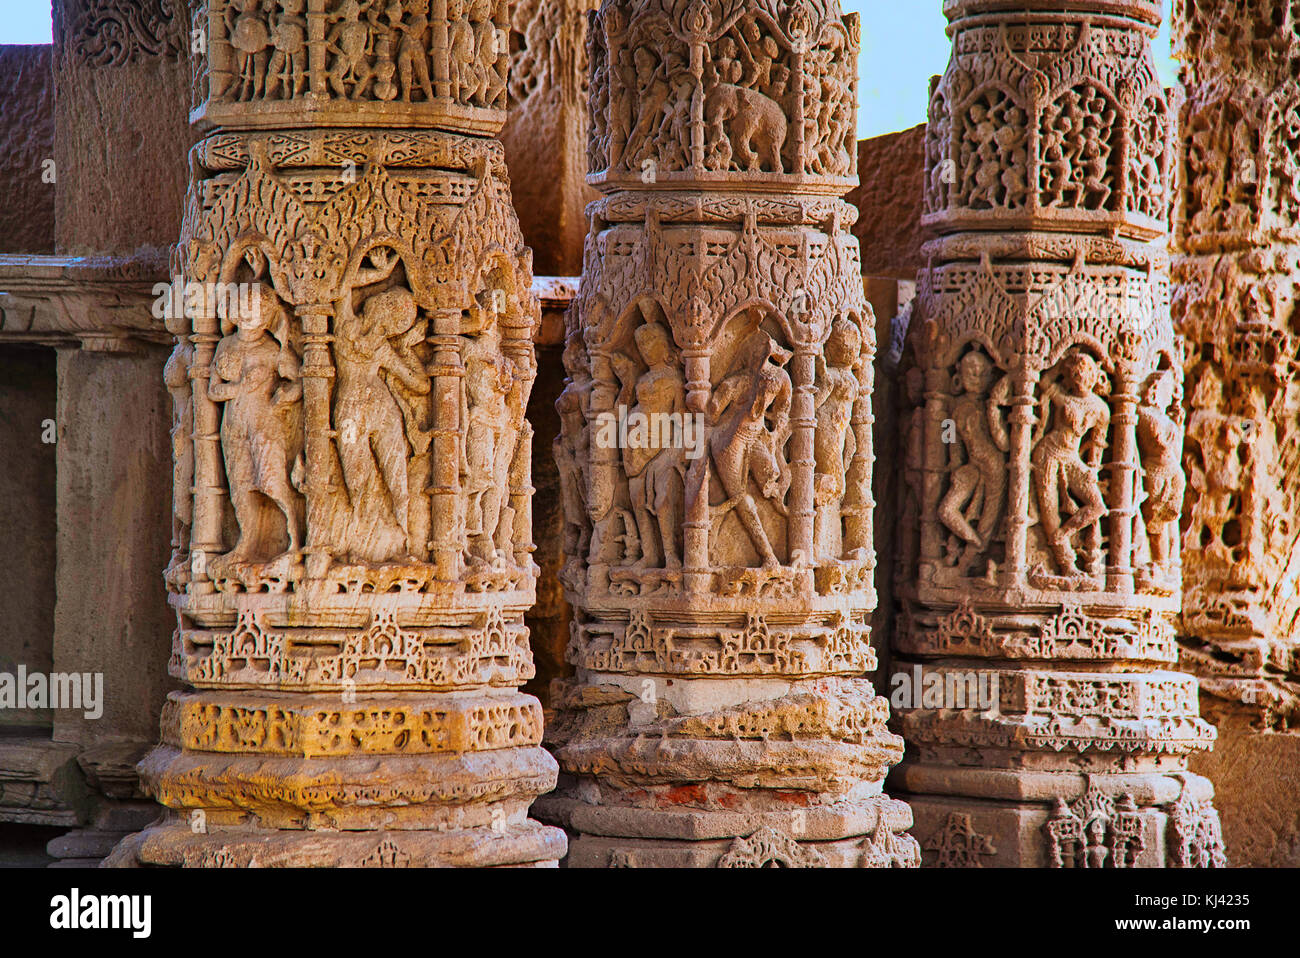 Dettagli intagliati sulla parete interna del Tempio del Sole. Villaggio Modhera del distretto di Mehsana, Gujarat, India Foto Stock